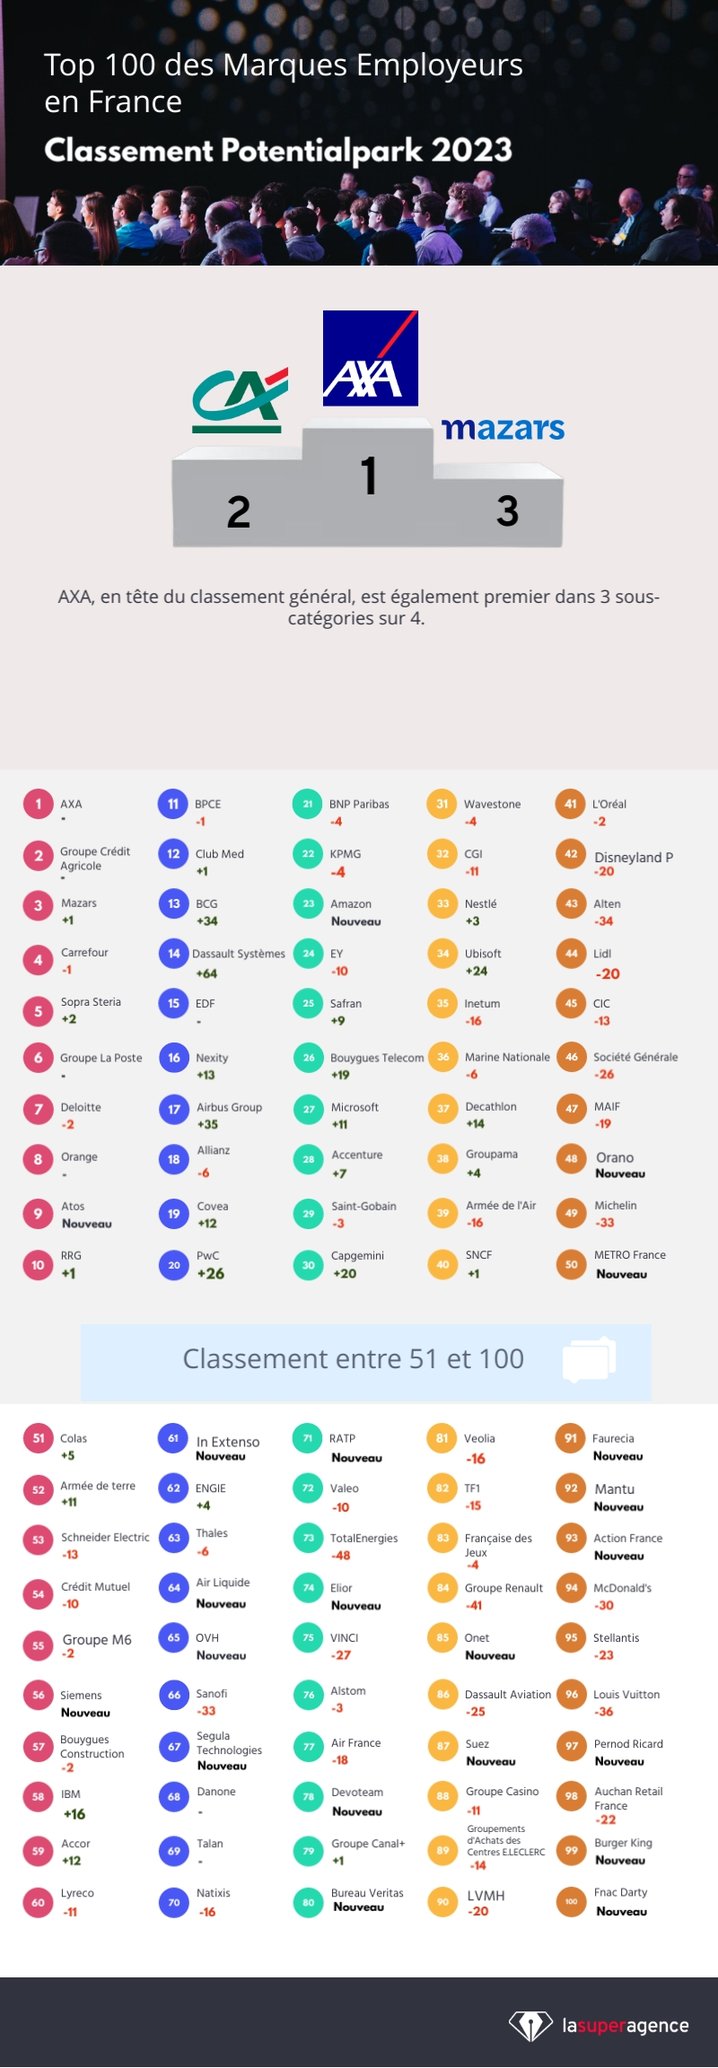 Le Top 100 des Marques Employeurs en France en 2023